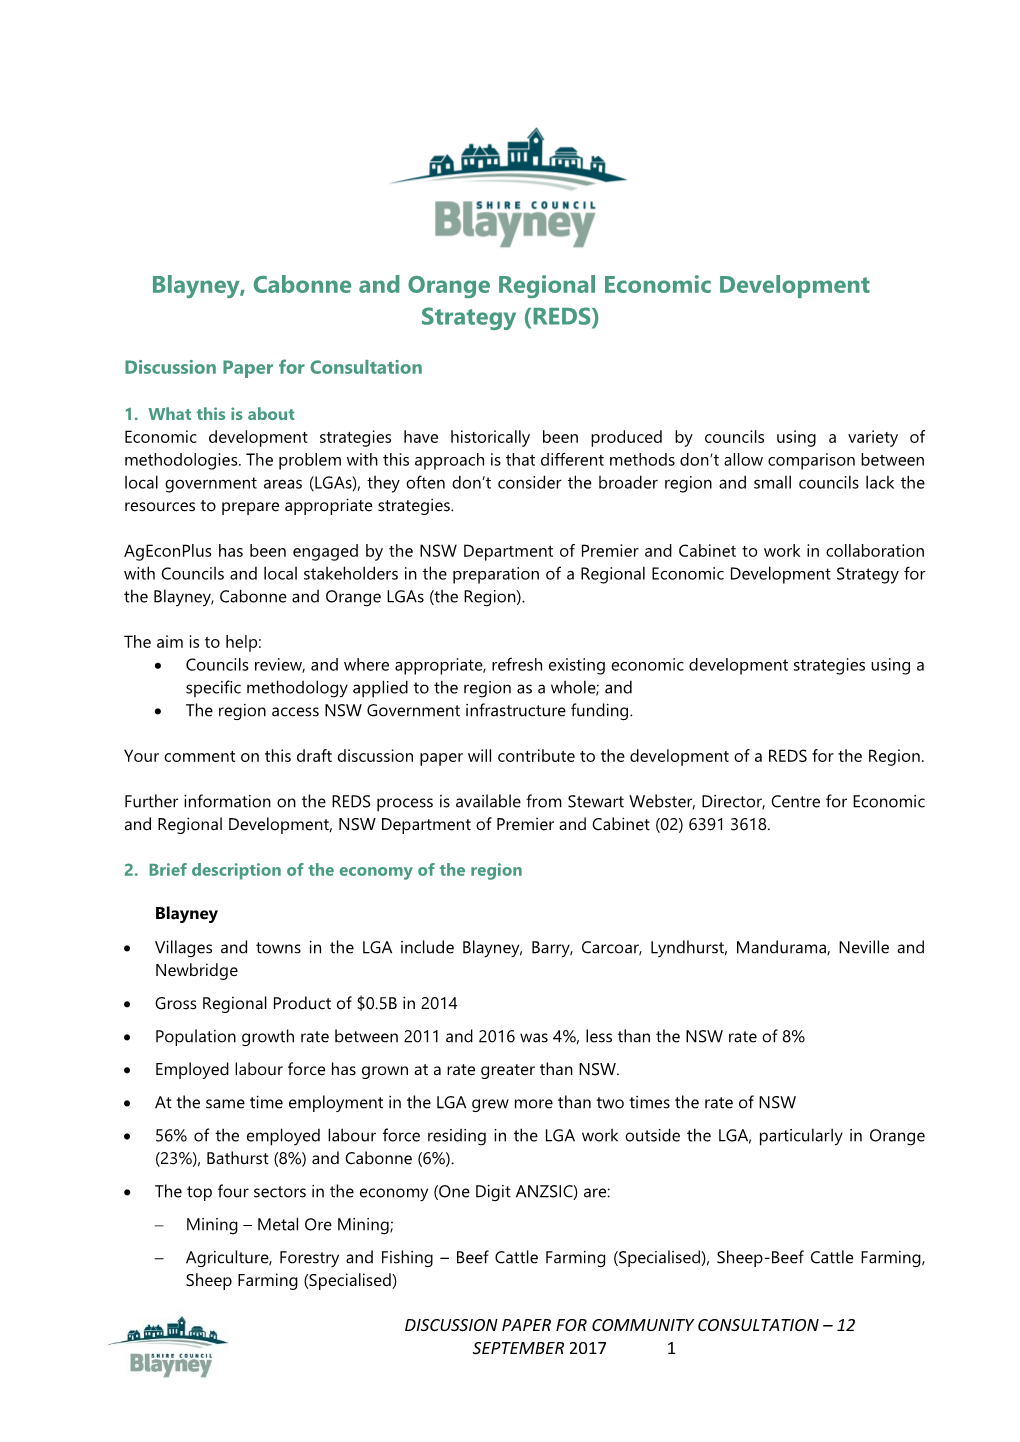 Blayney, Cabonne and Orange Regional Economic Development Strategy (REDS)